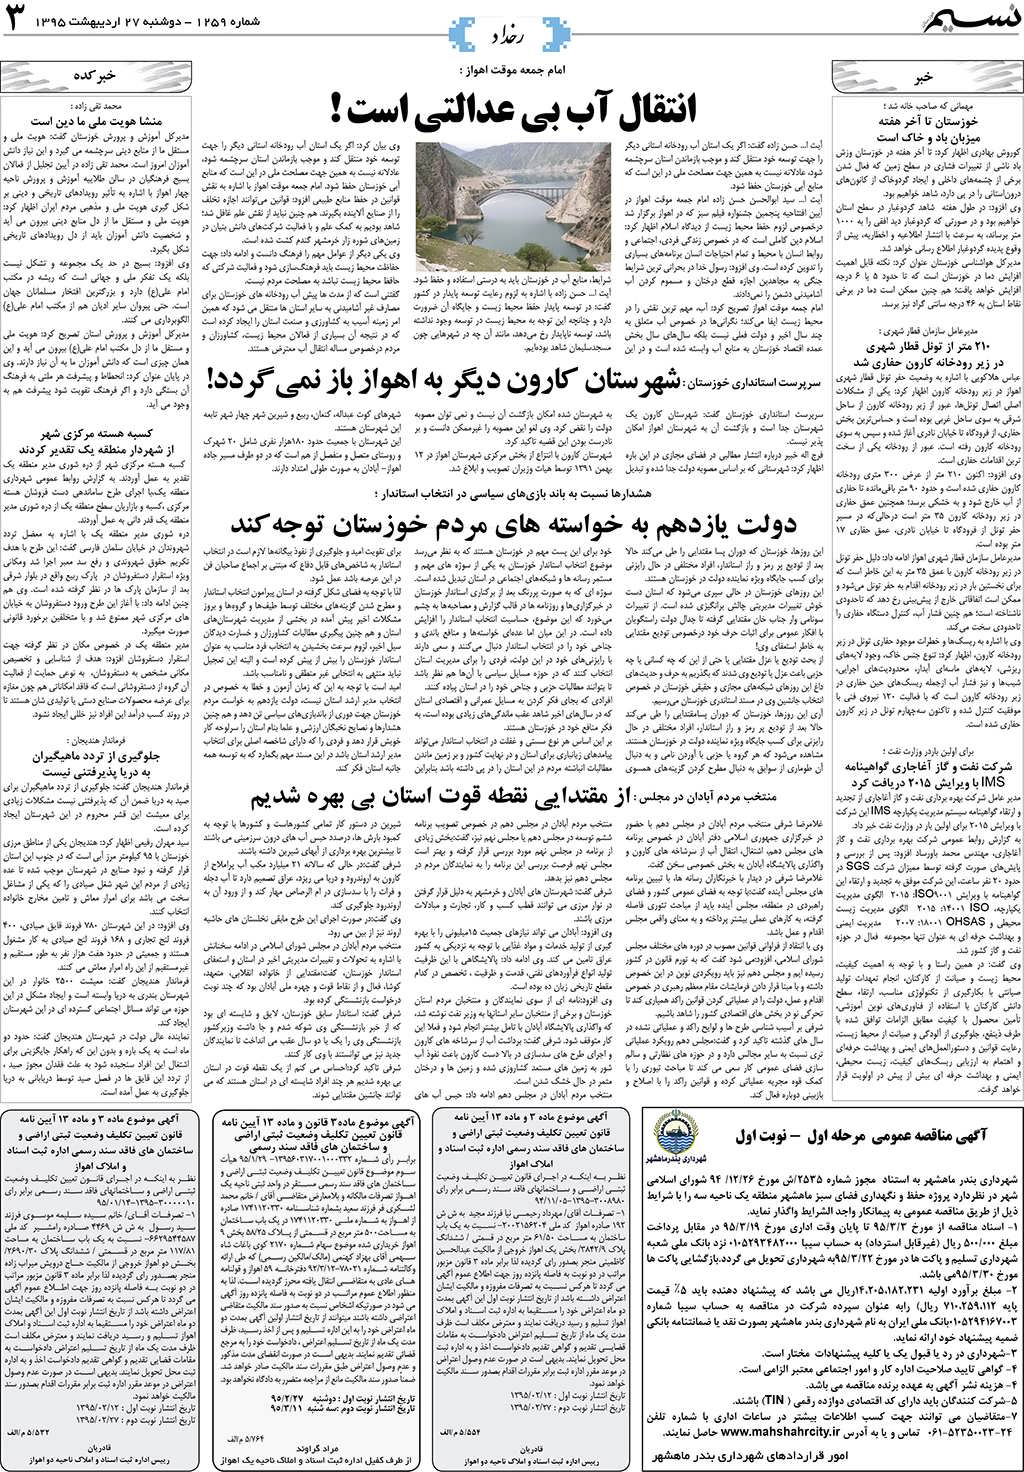 صفحه رخداد روزنامه نسیم شماره 1259